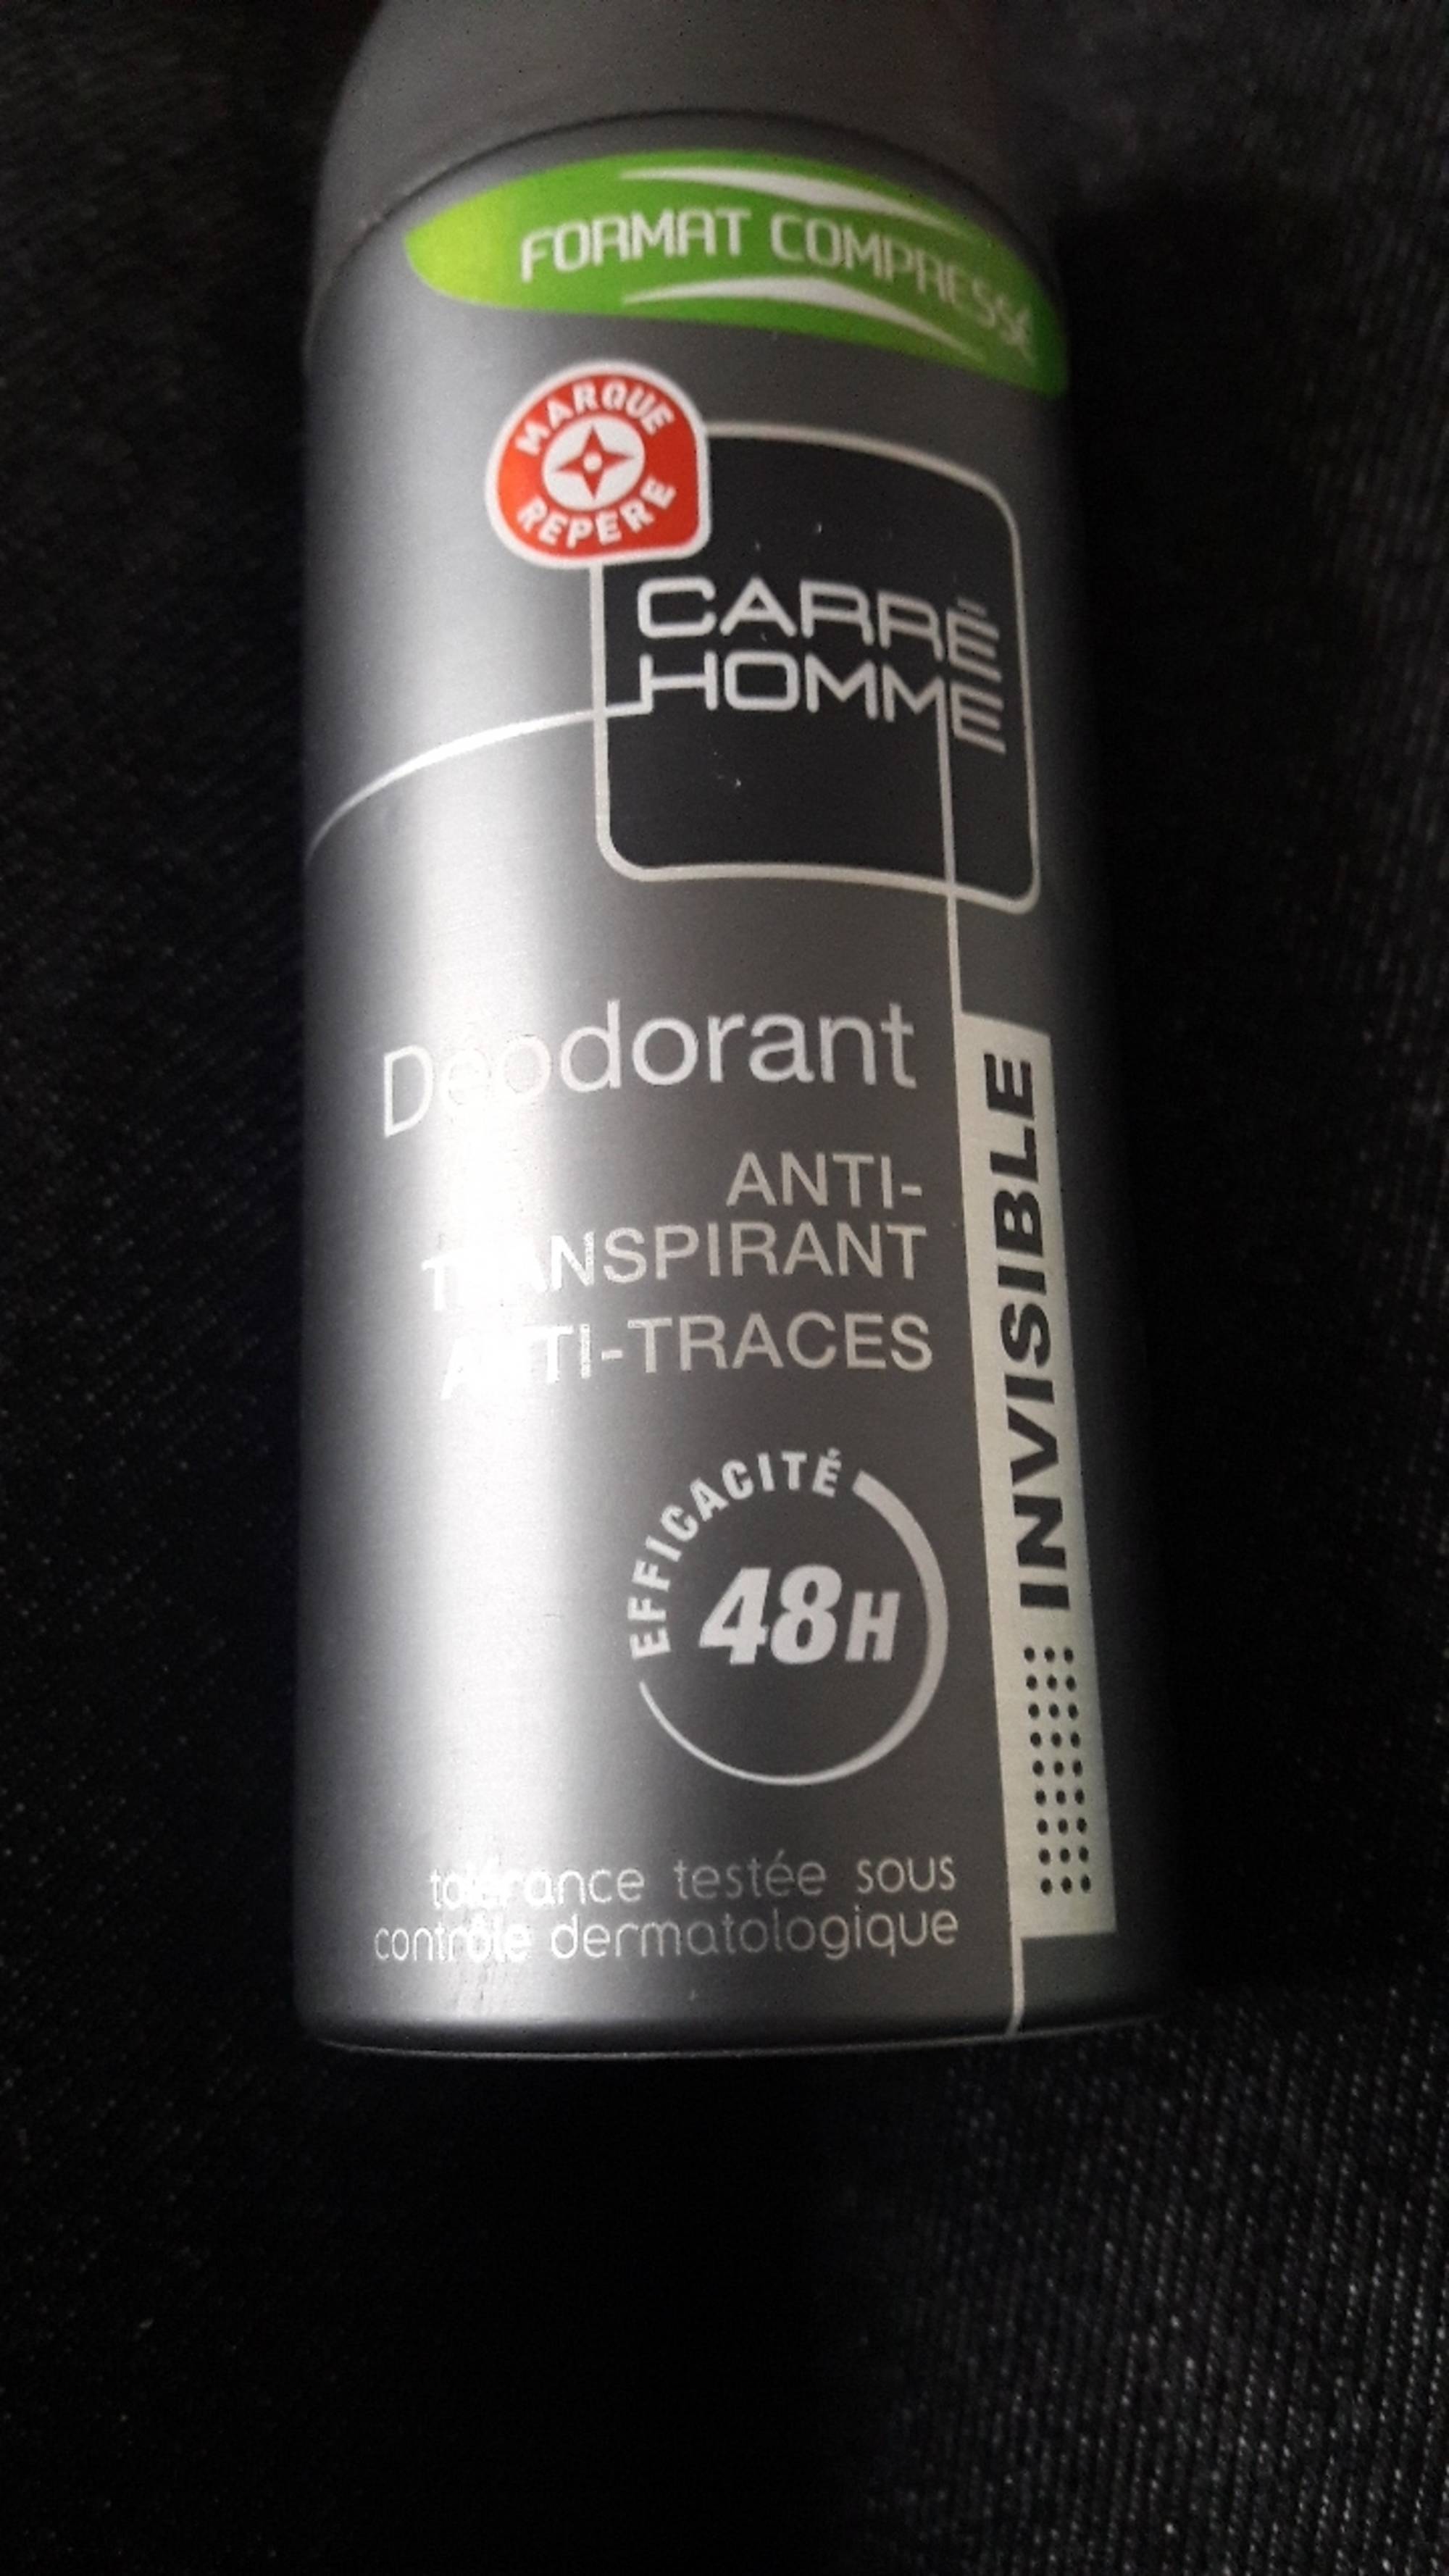 MARQUE REPÈRE - Carré homme - Déodorant invisible anti-transpirant 48h